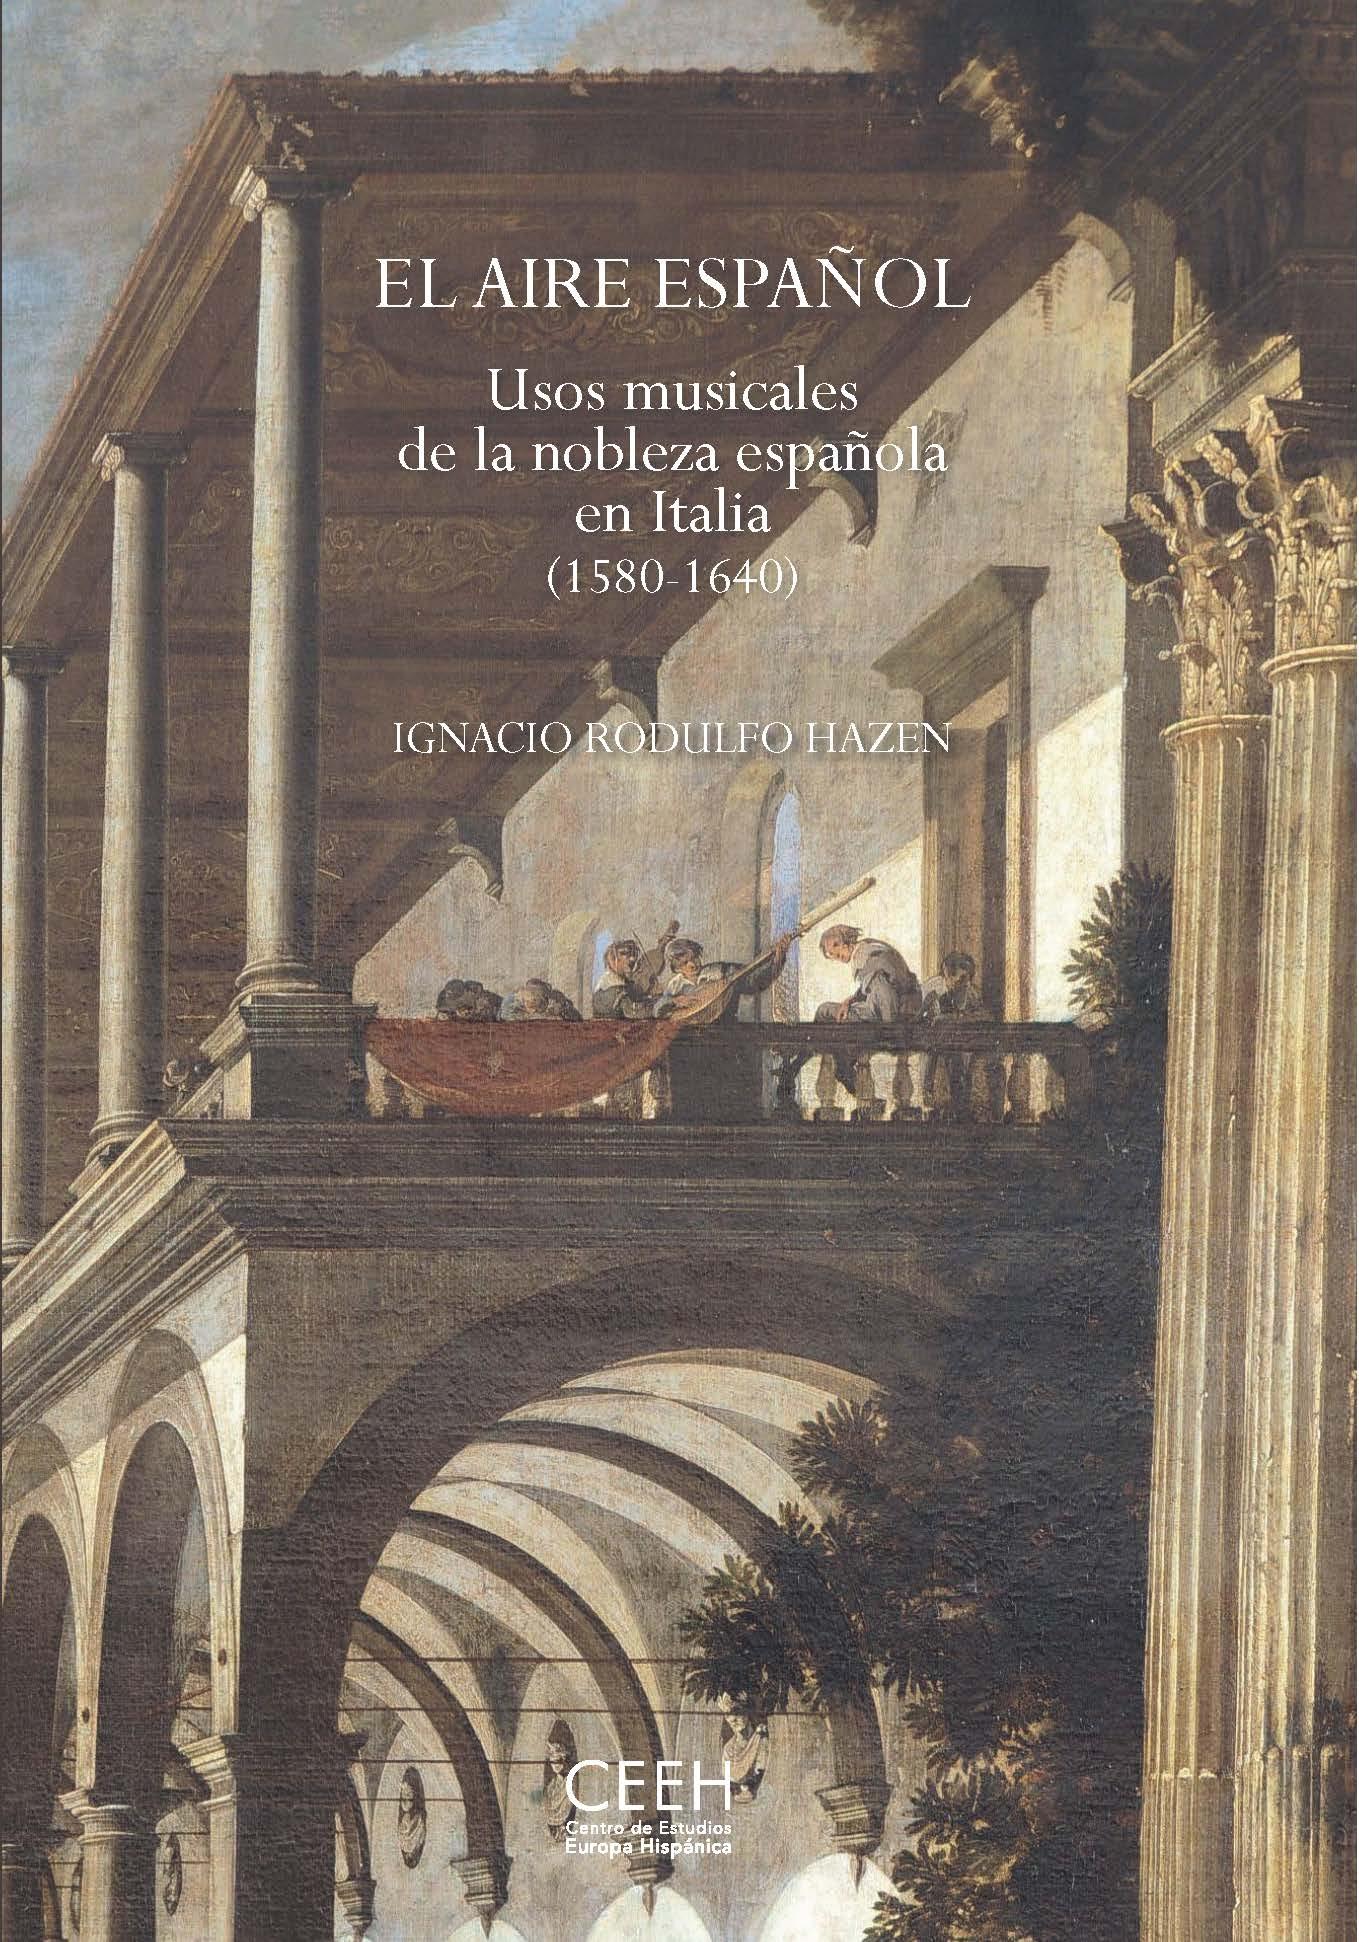 El aire español "Usos musicales de la nobleza española en Italia (1580-1640)"